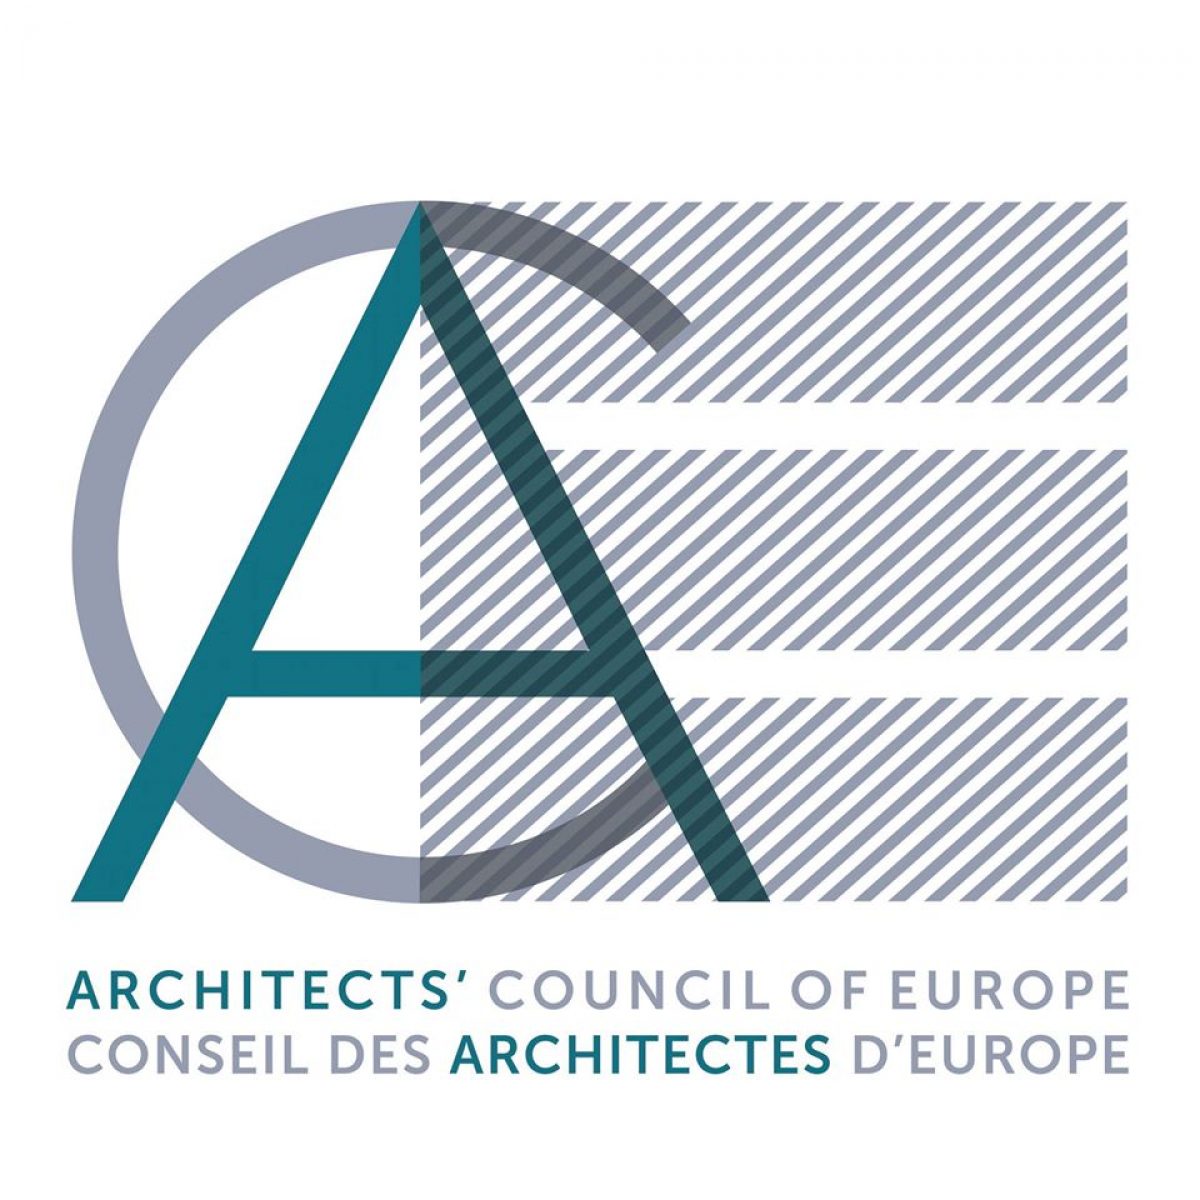 Ειδική Συνεδρία του Ευρωπαϊκού Συμβουλίου Αρχιτεκτόνων (ACE/CAE)